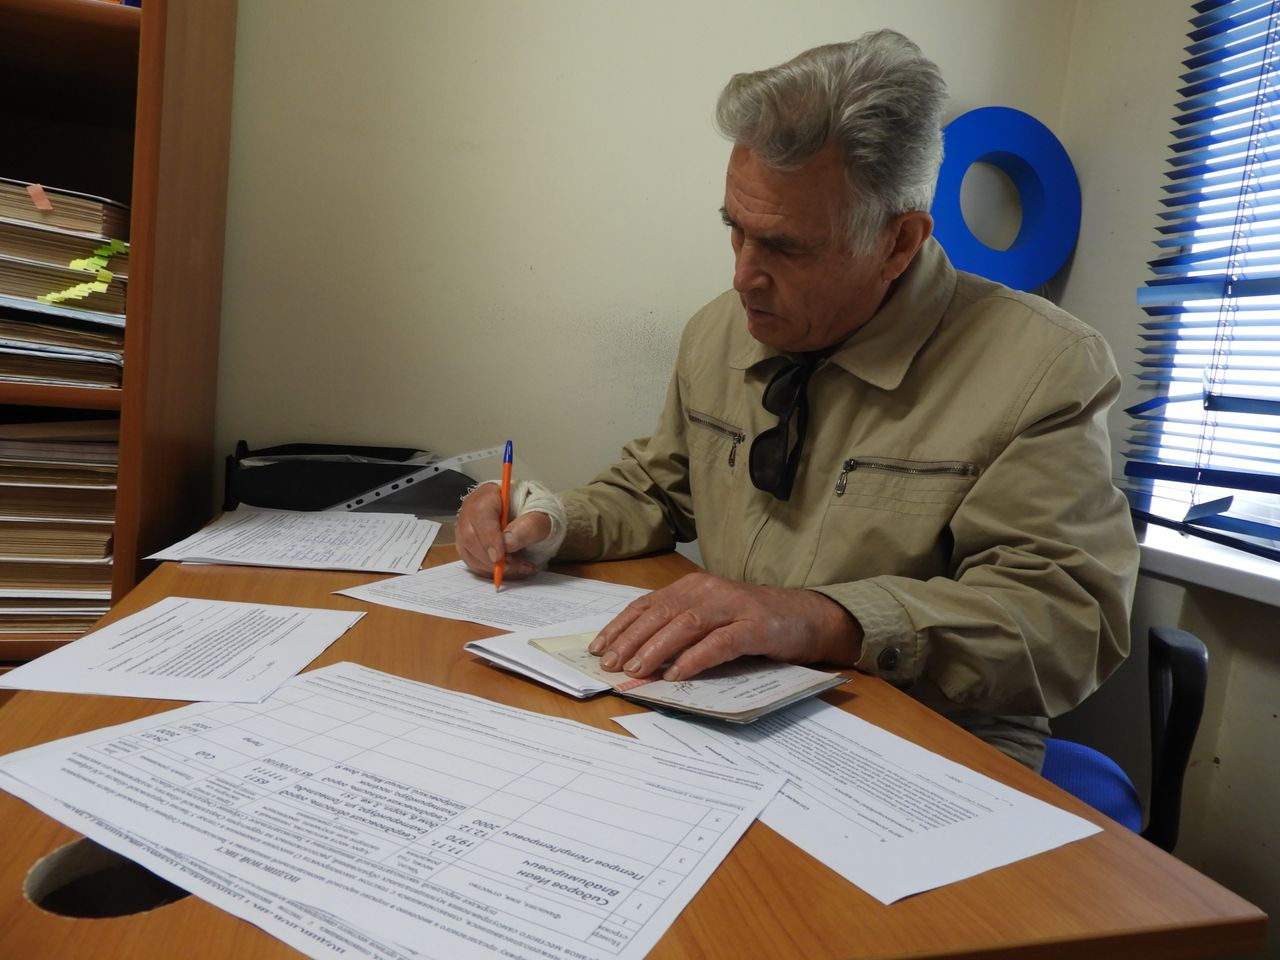 В редакции "ВК" за возврат прямых выборов собрано 76 подписей. В регионе - более 10 тысяч